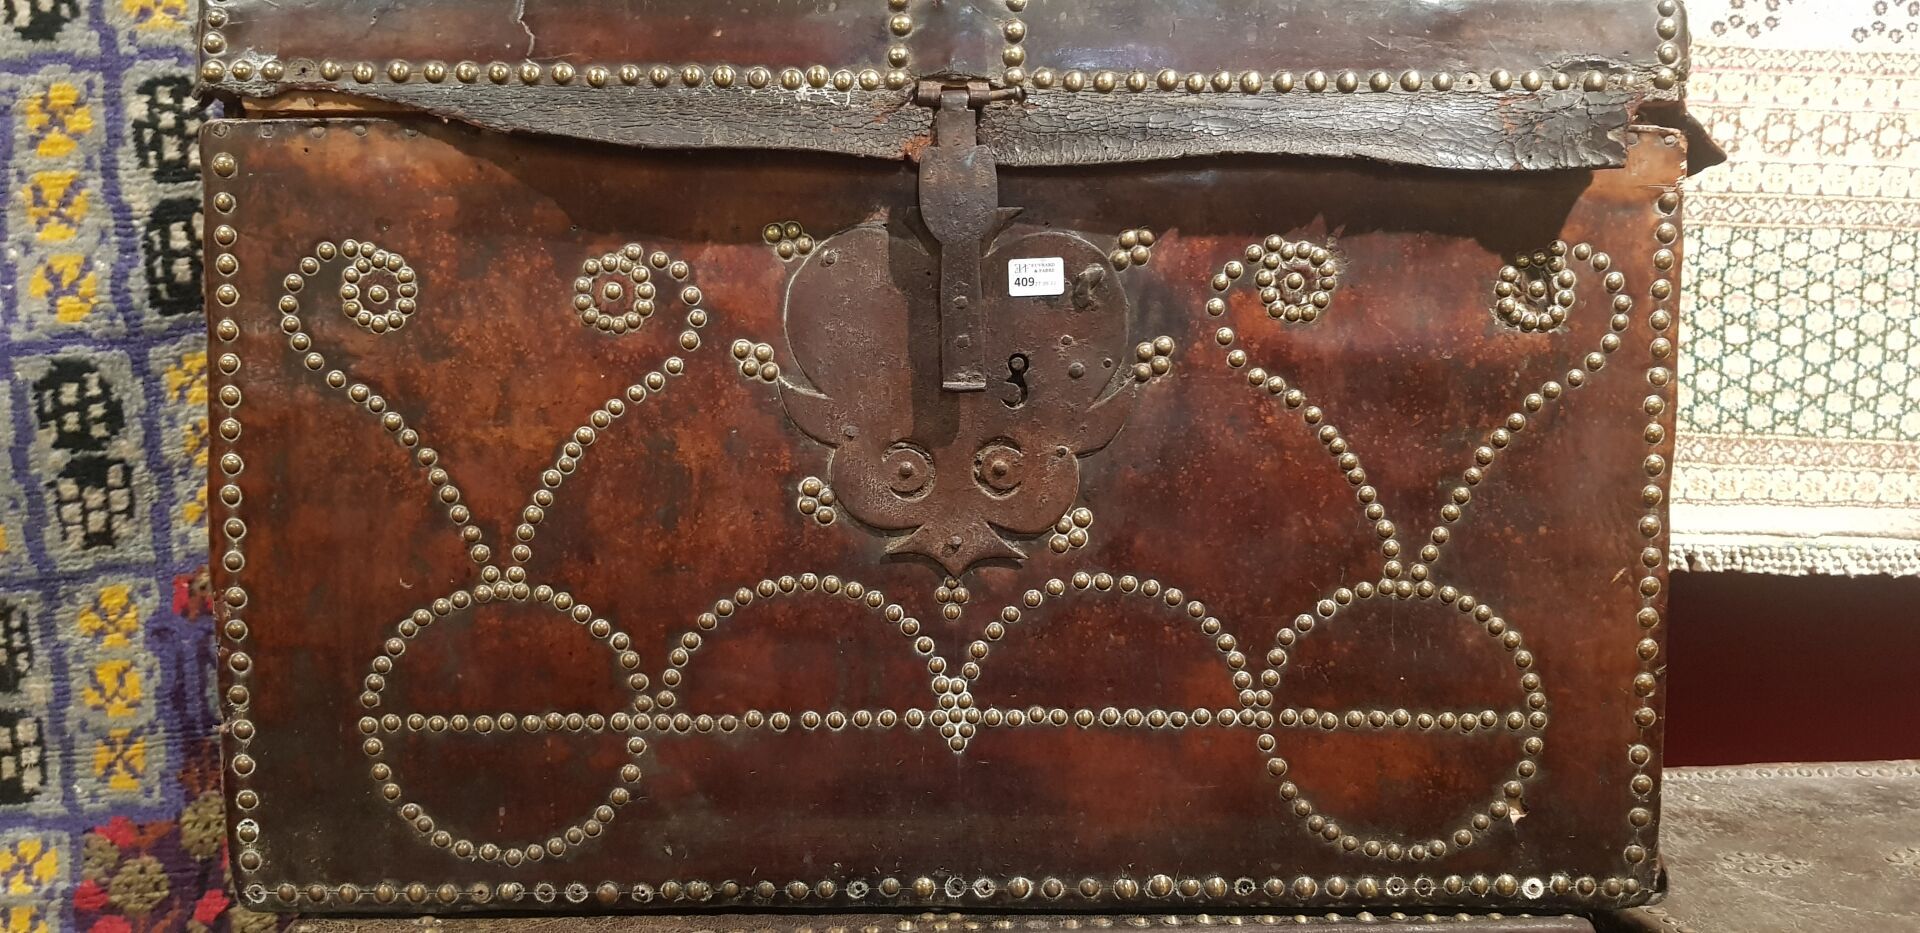 Null 异国情调的木箱，上面覆盖着皮革，并装饰着铆钉的rniceaux。

老西班牙人的作品